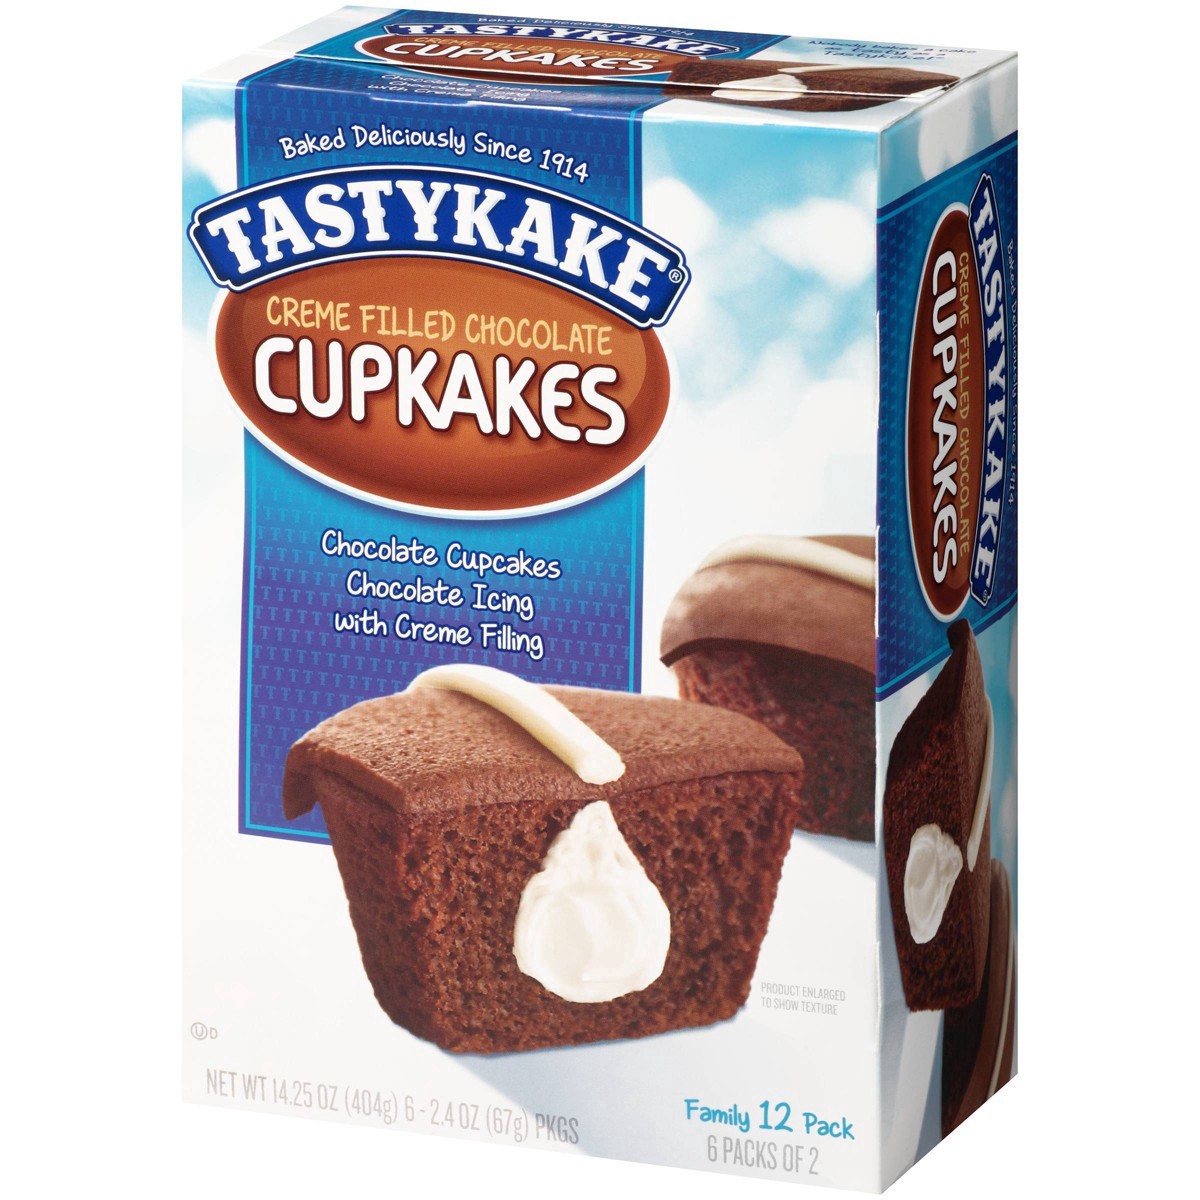 slide 12 of 59, Tastykake Creme Filled Chocolate Cupcakes 6-2.4 oz. Packs, 6 ct